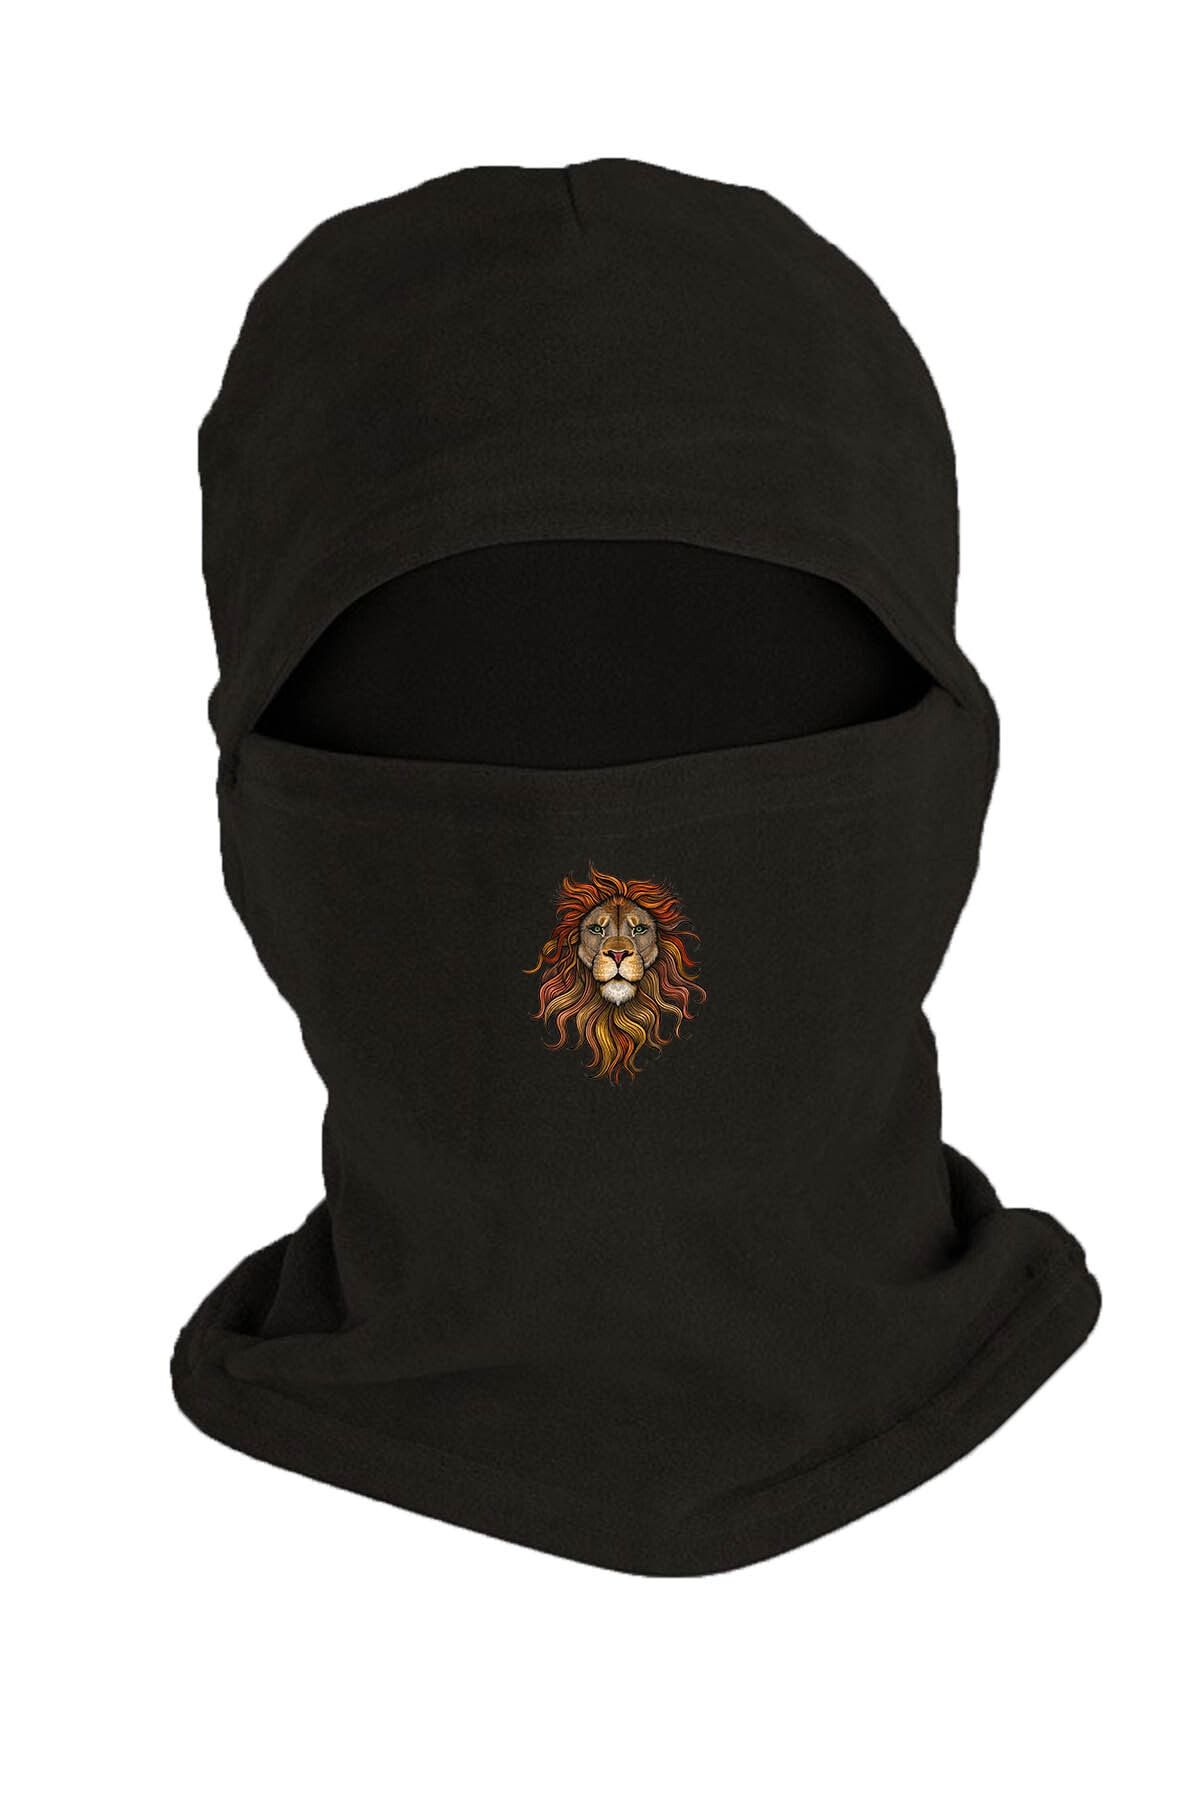 Zeron Tasarım Lion Baskılı Kışlık Polar Kar Maskesi Siyah Bll2850